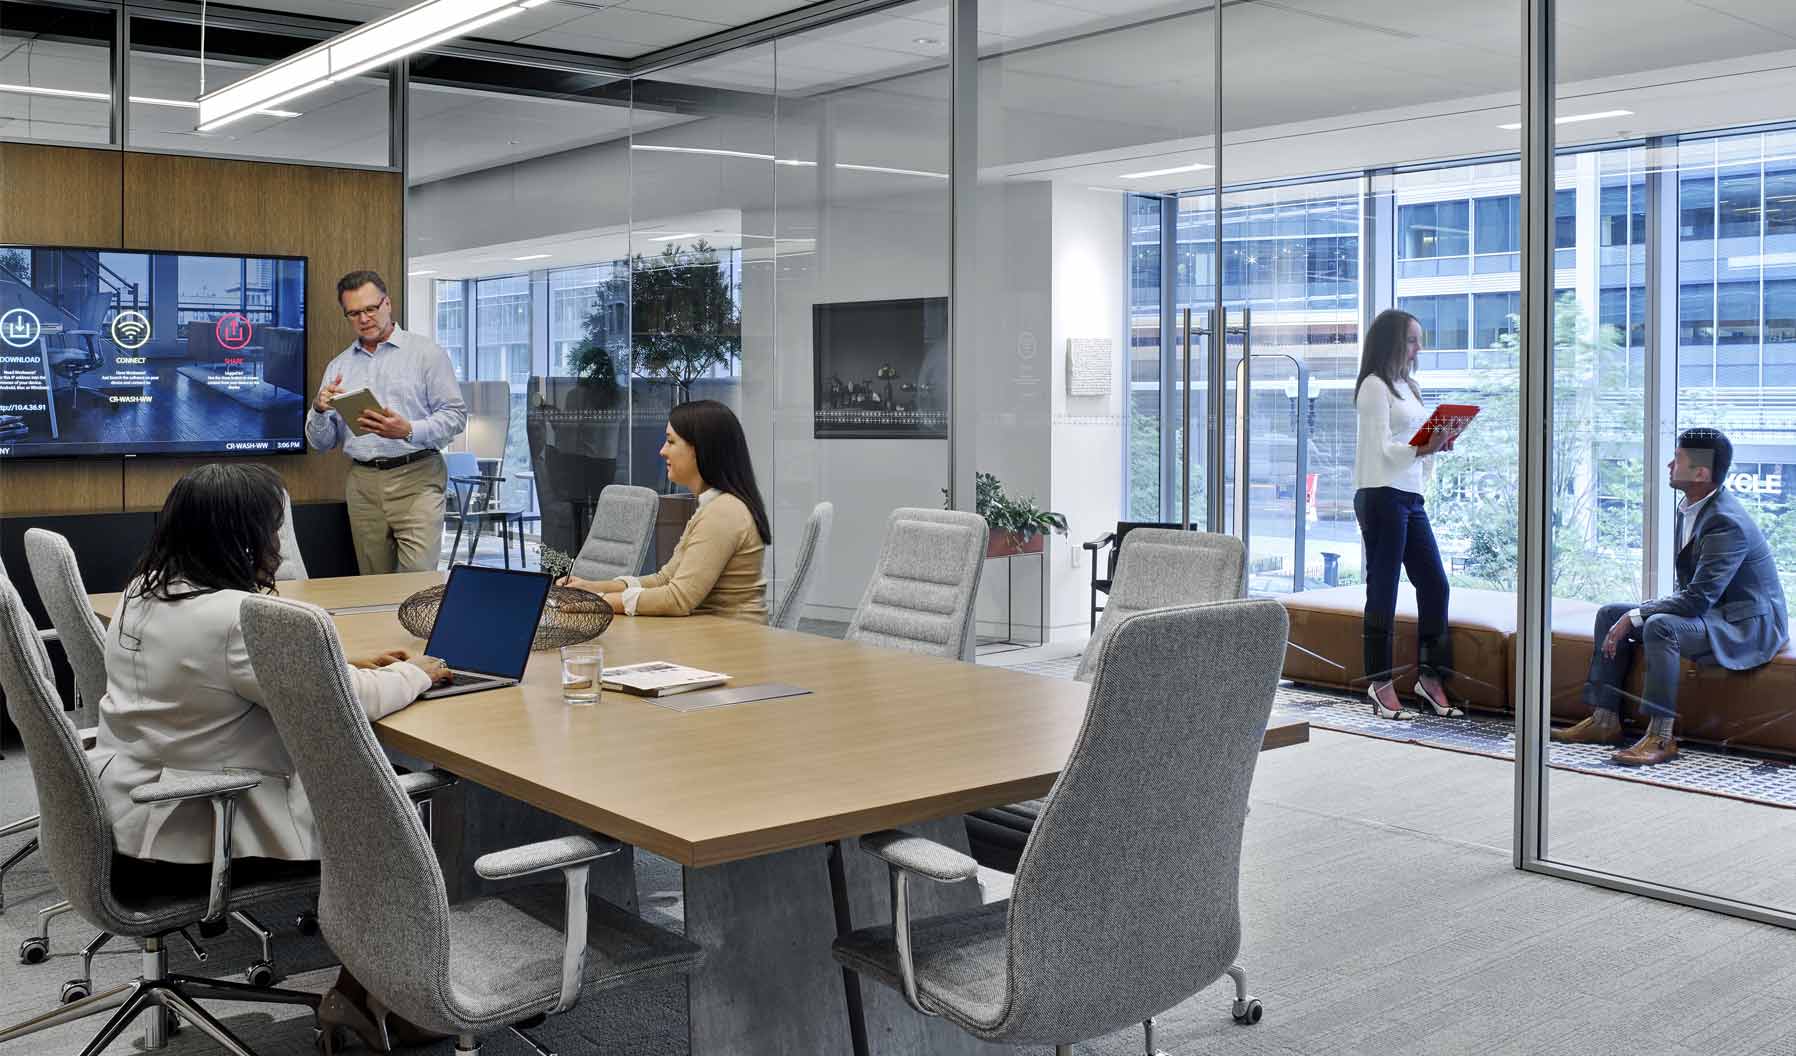 このミーティングスペースは、オフィス内のコラボレーションはもちろん温かみのある心地よい文化をサポートします。木製のアクセントウォール、シェルフ、隣接するラウンジ席エリアが、このスペースにあふれる自然光を背景にさらなるレイヤーを生み出しています。